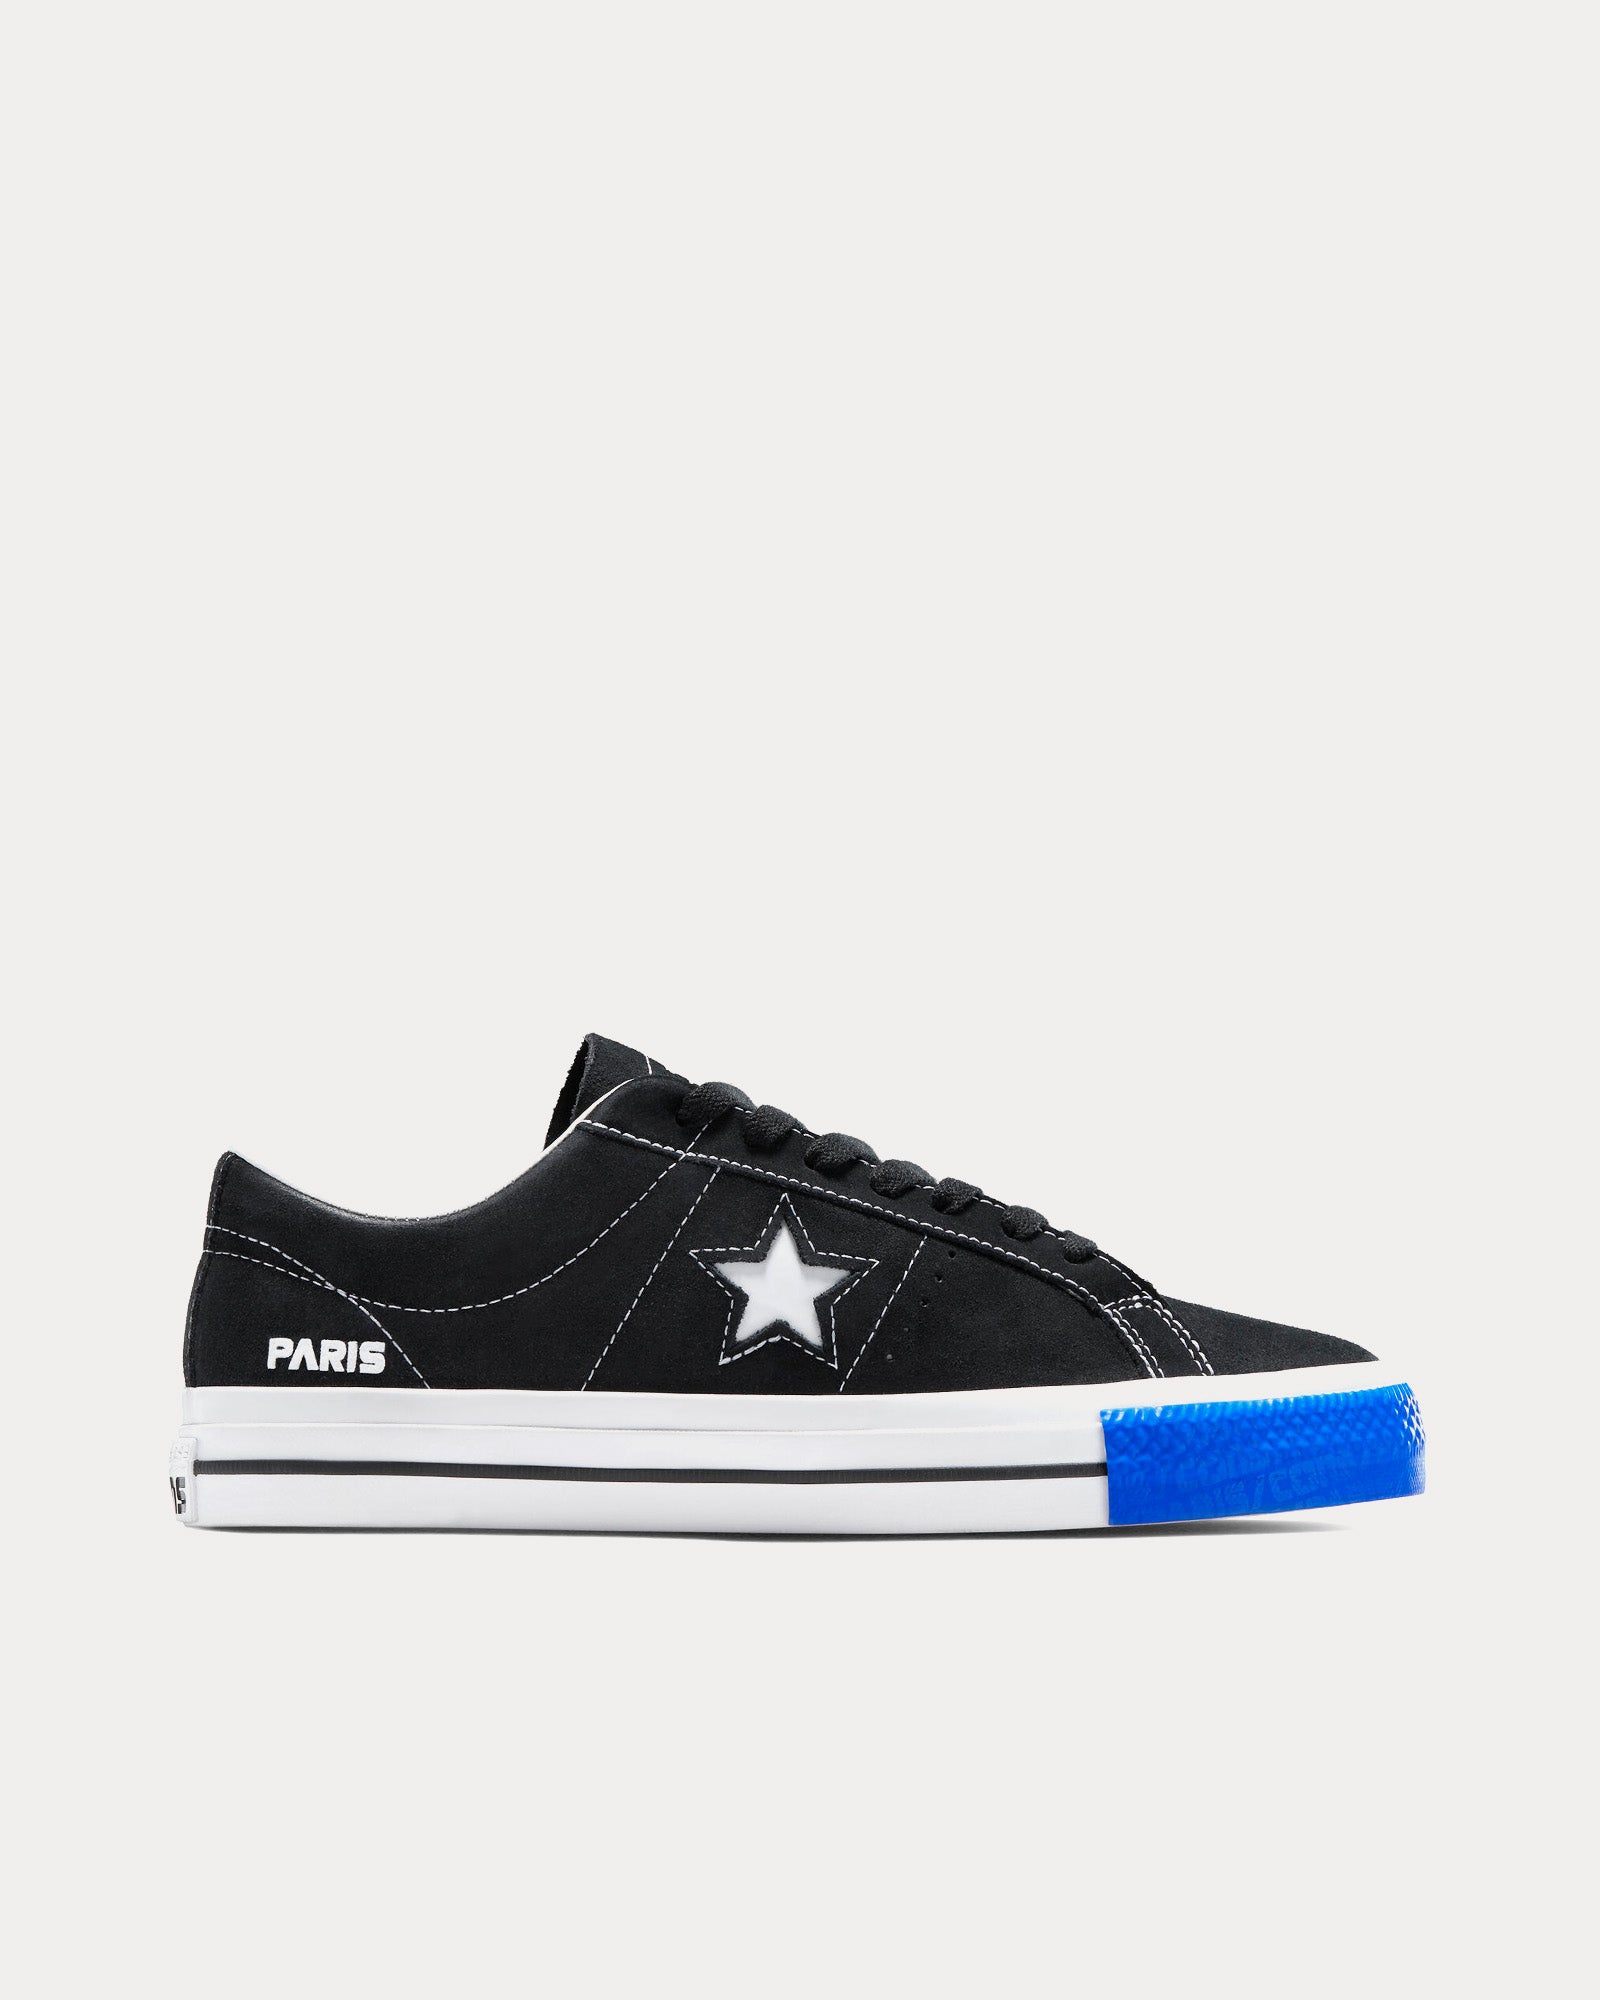 Converse - One Star Pro Paris Black / Paris Blue Low Top Sneakers